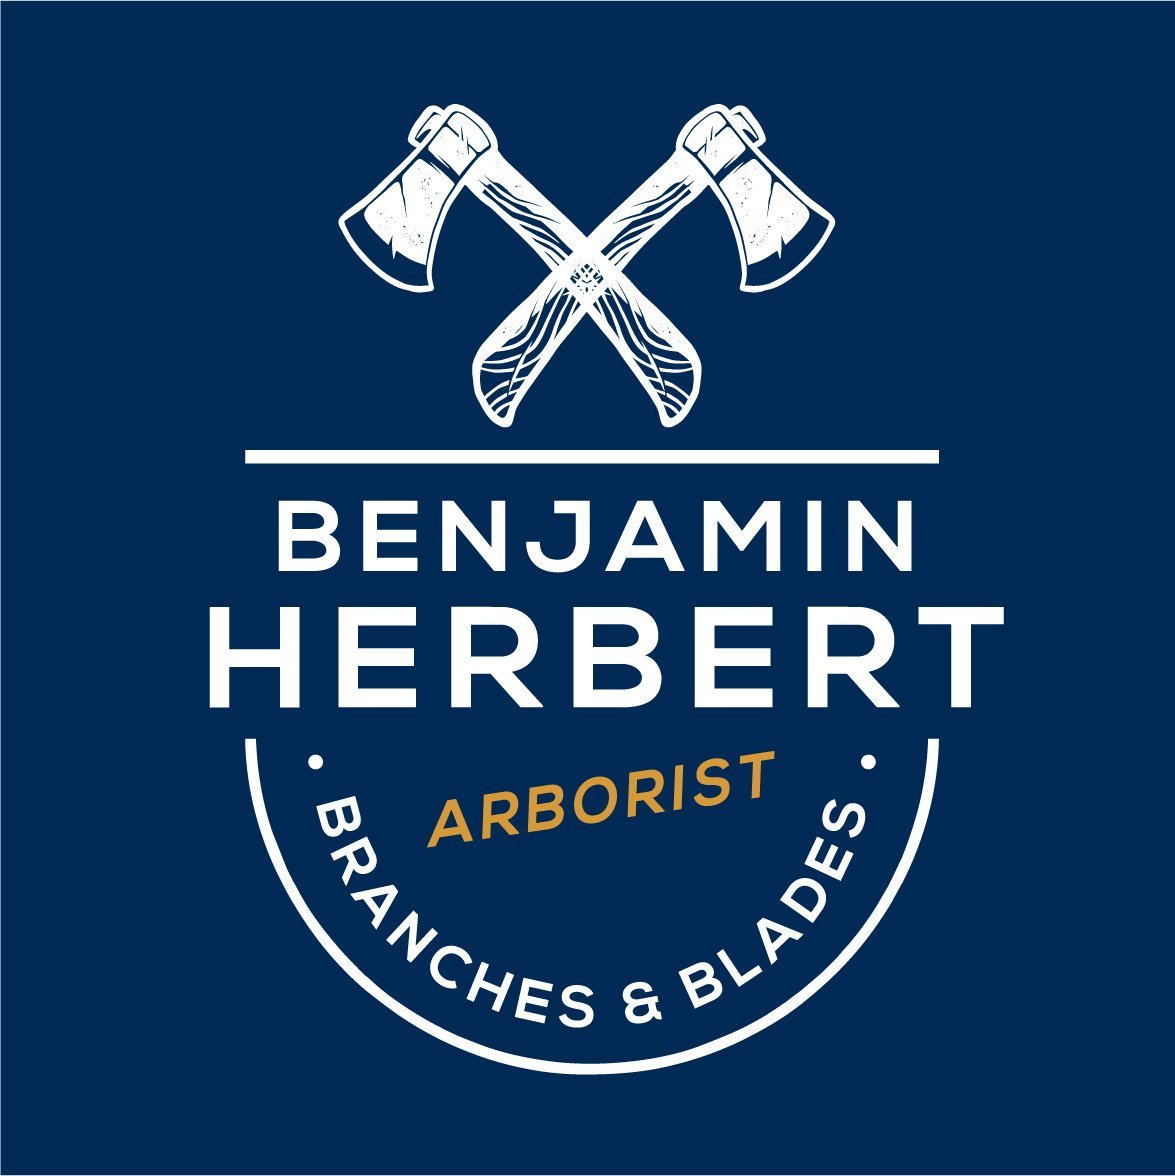 Benjamin Herber Arborist-logobadge2.jpg